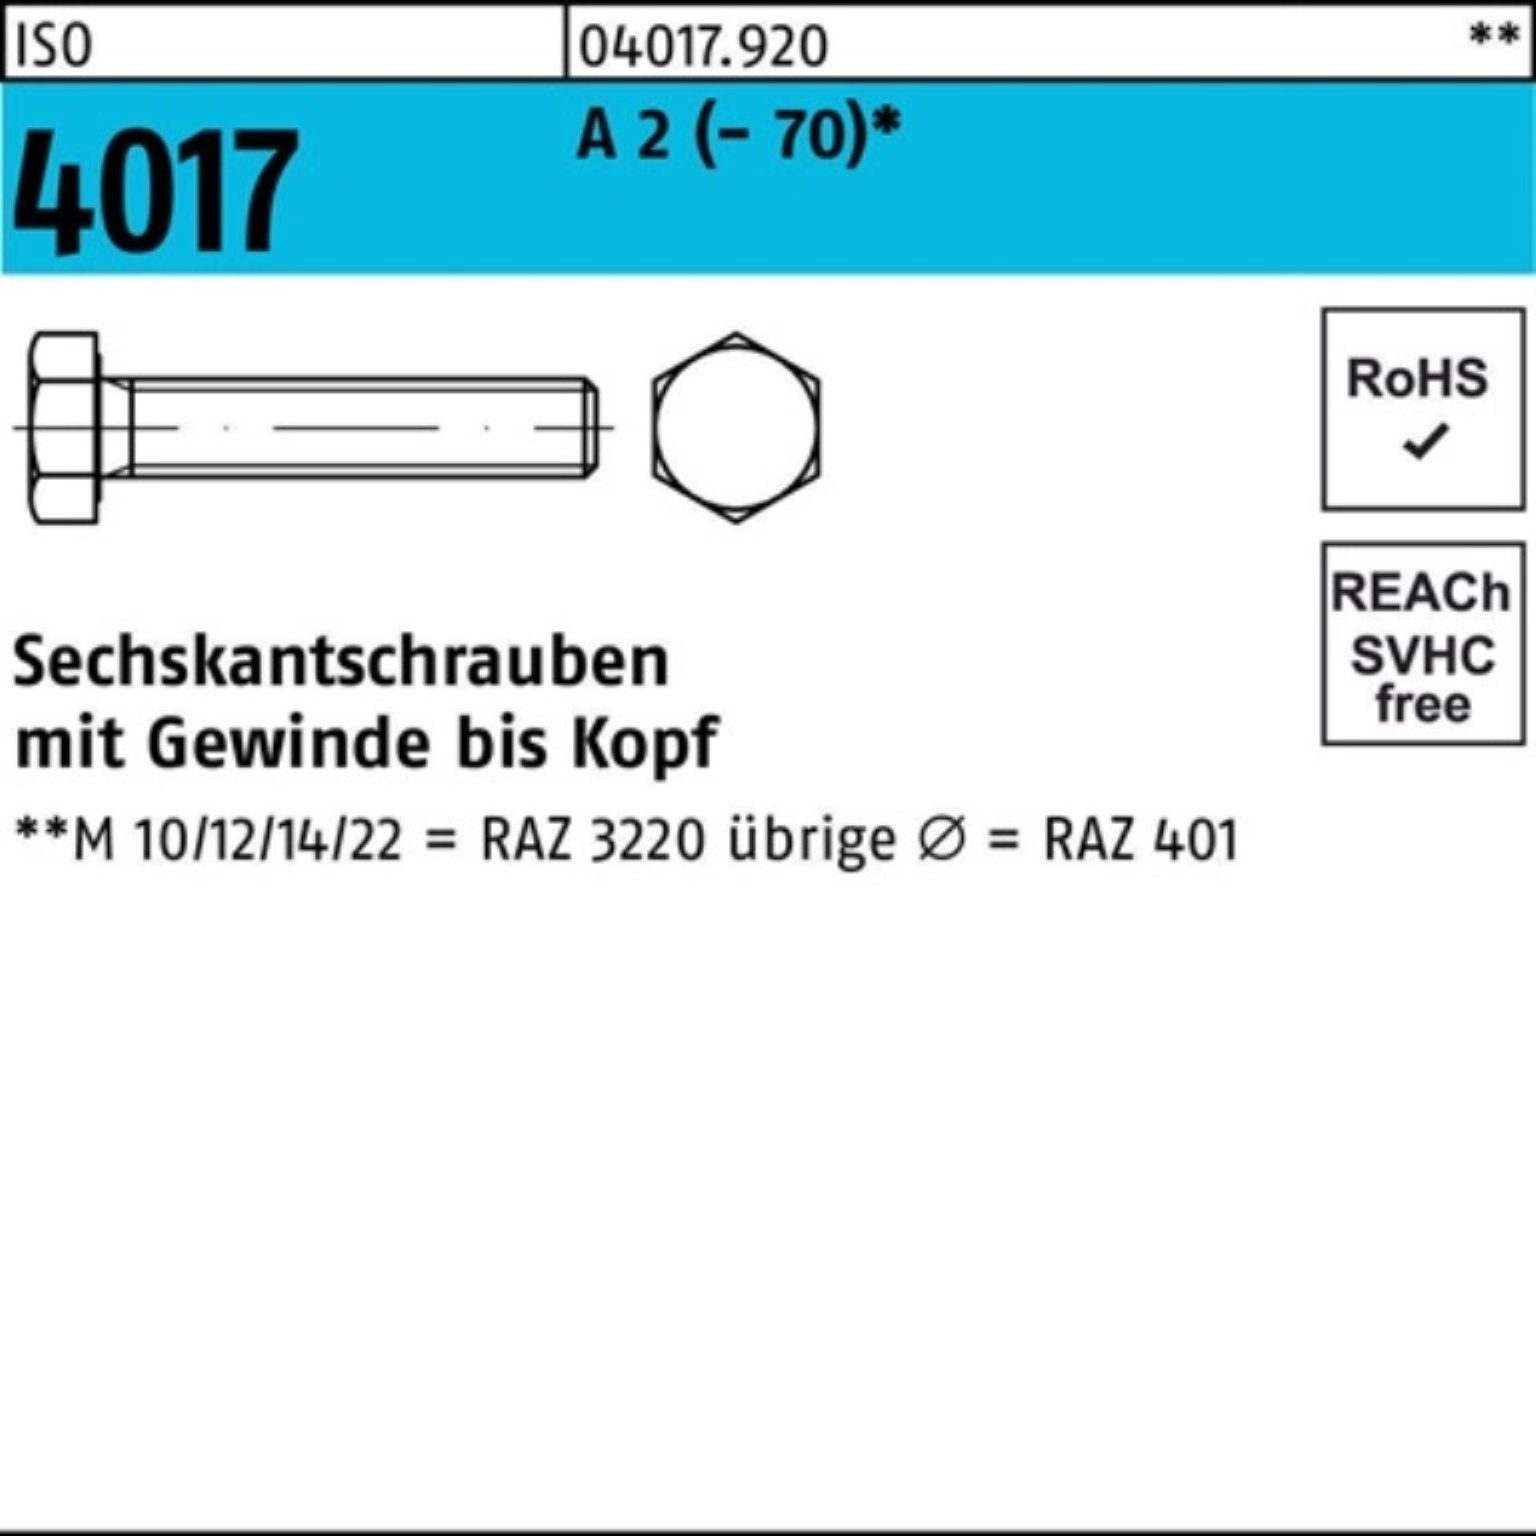 Bufab Sechskantschraube 100er Pack Sechskantschraube ISO 4017 VG M8x 120 A 2 (70) 50 Stück